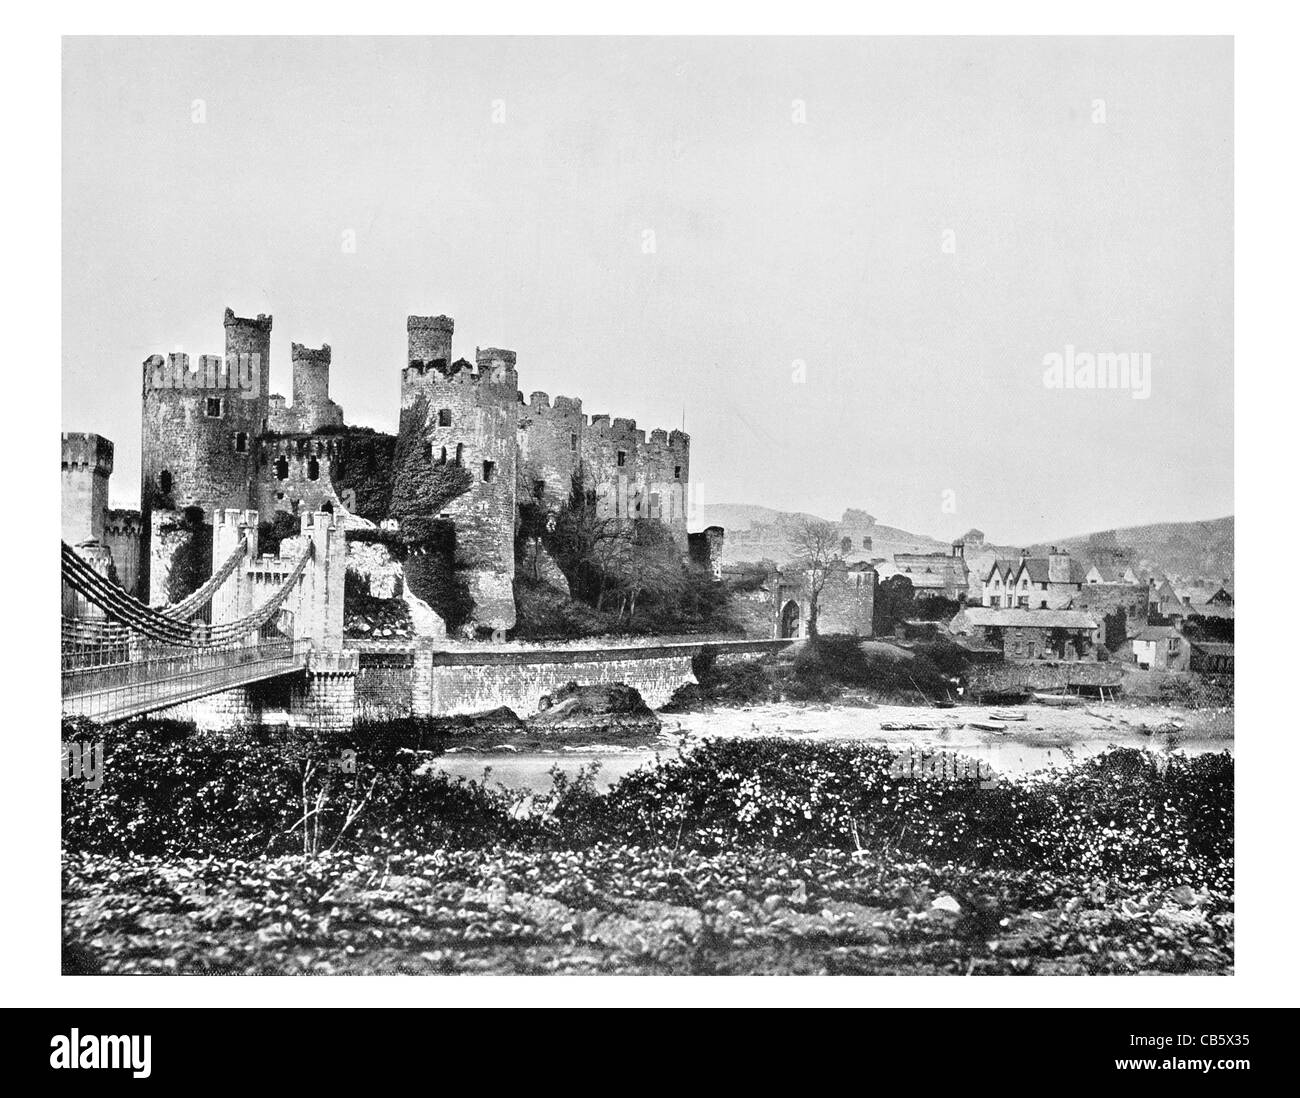 Le Pays de Galles médiéval château Conway le roi Édouard I tourelles pont-levis herse barbican gateway tour prison garnison Banque D'Images